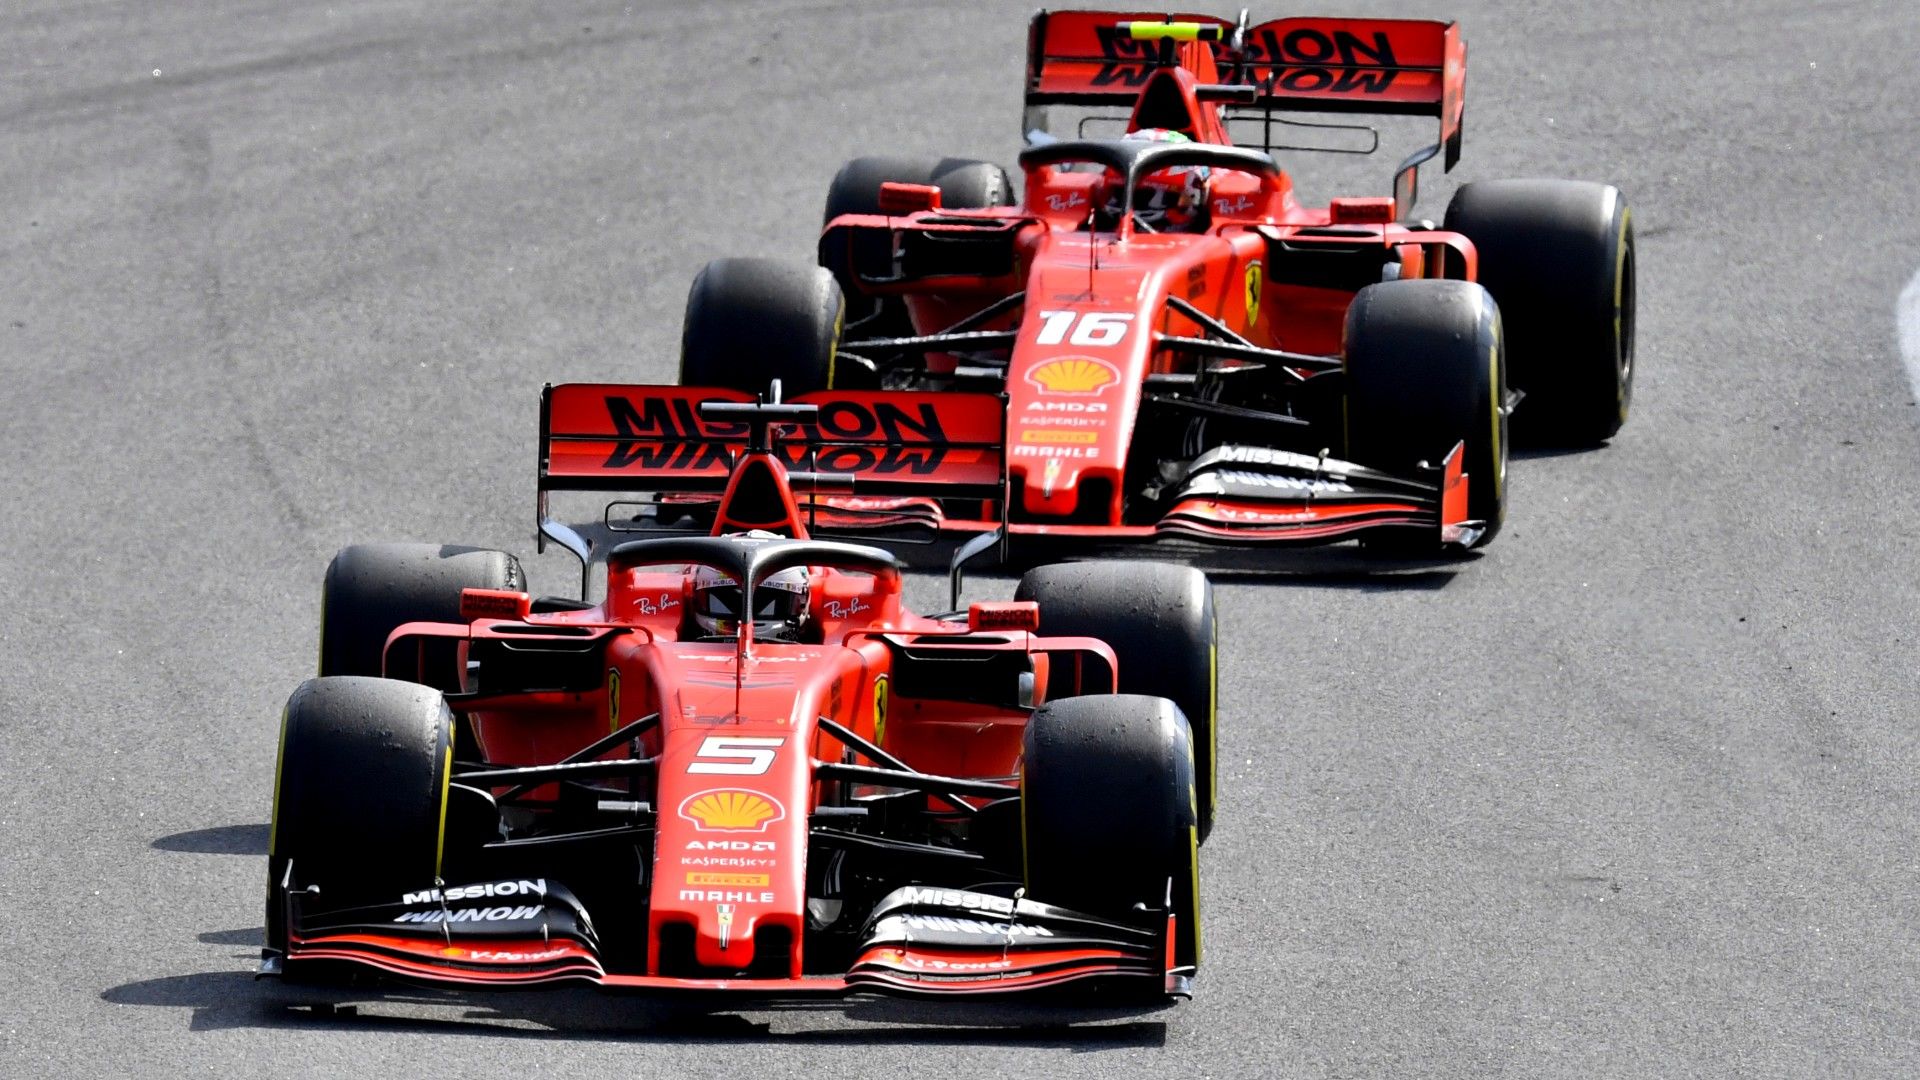 Ferrari-blama: A szabad versenyzés nem azt jelenti, hogy legyél ostoba